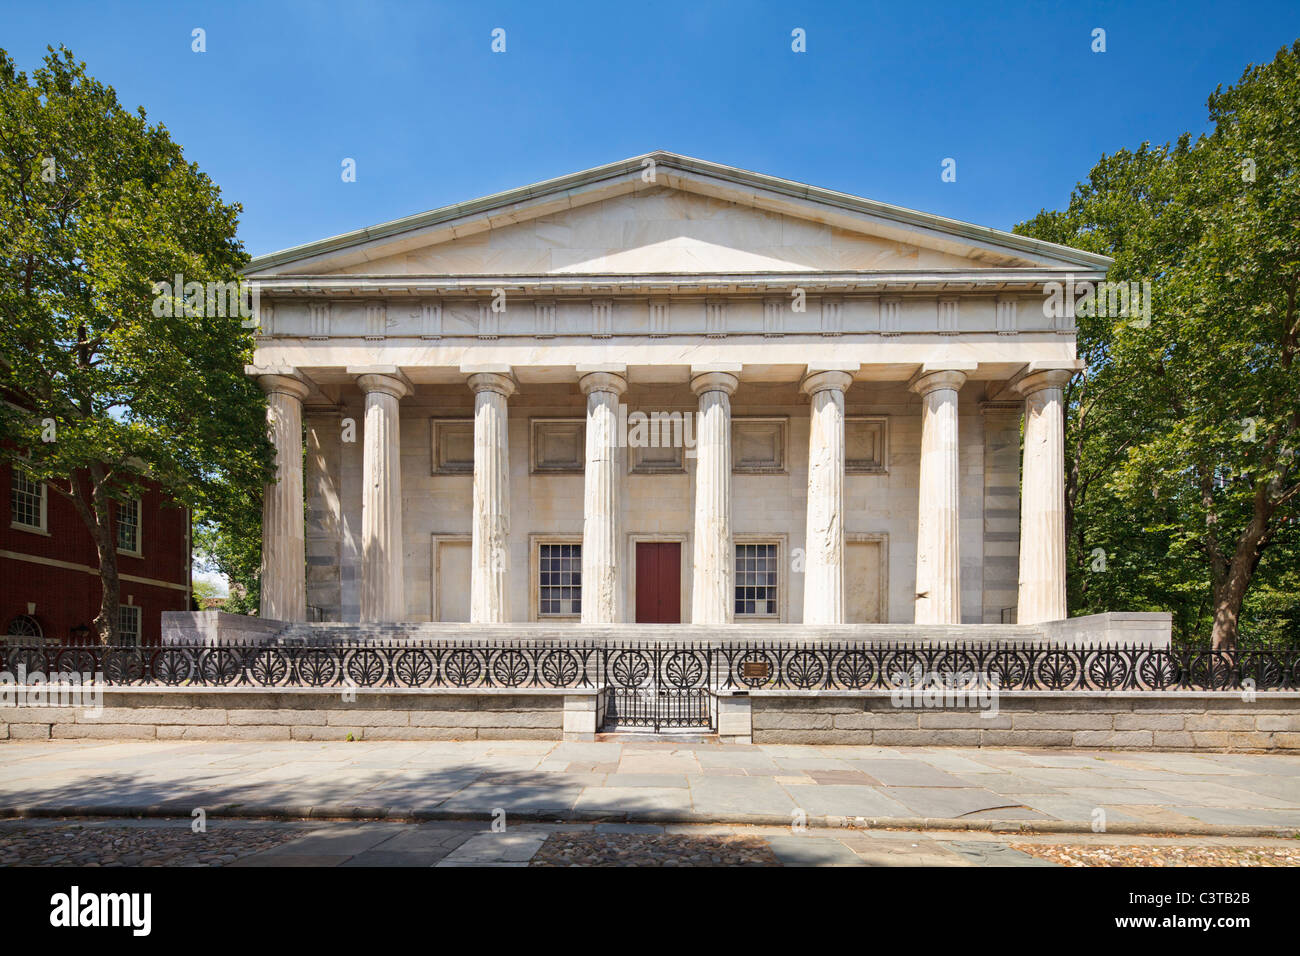 Second Bank of US, Philadelphia Stock Photo